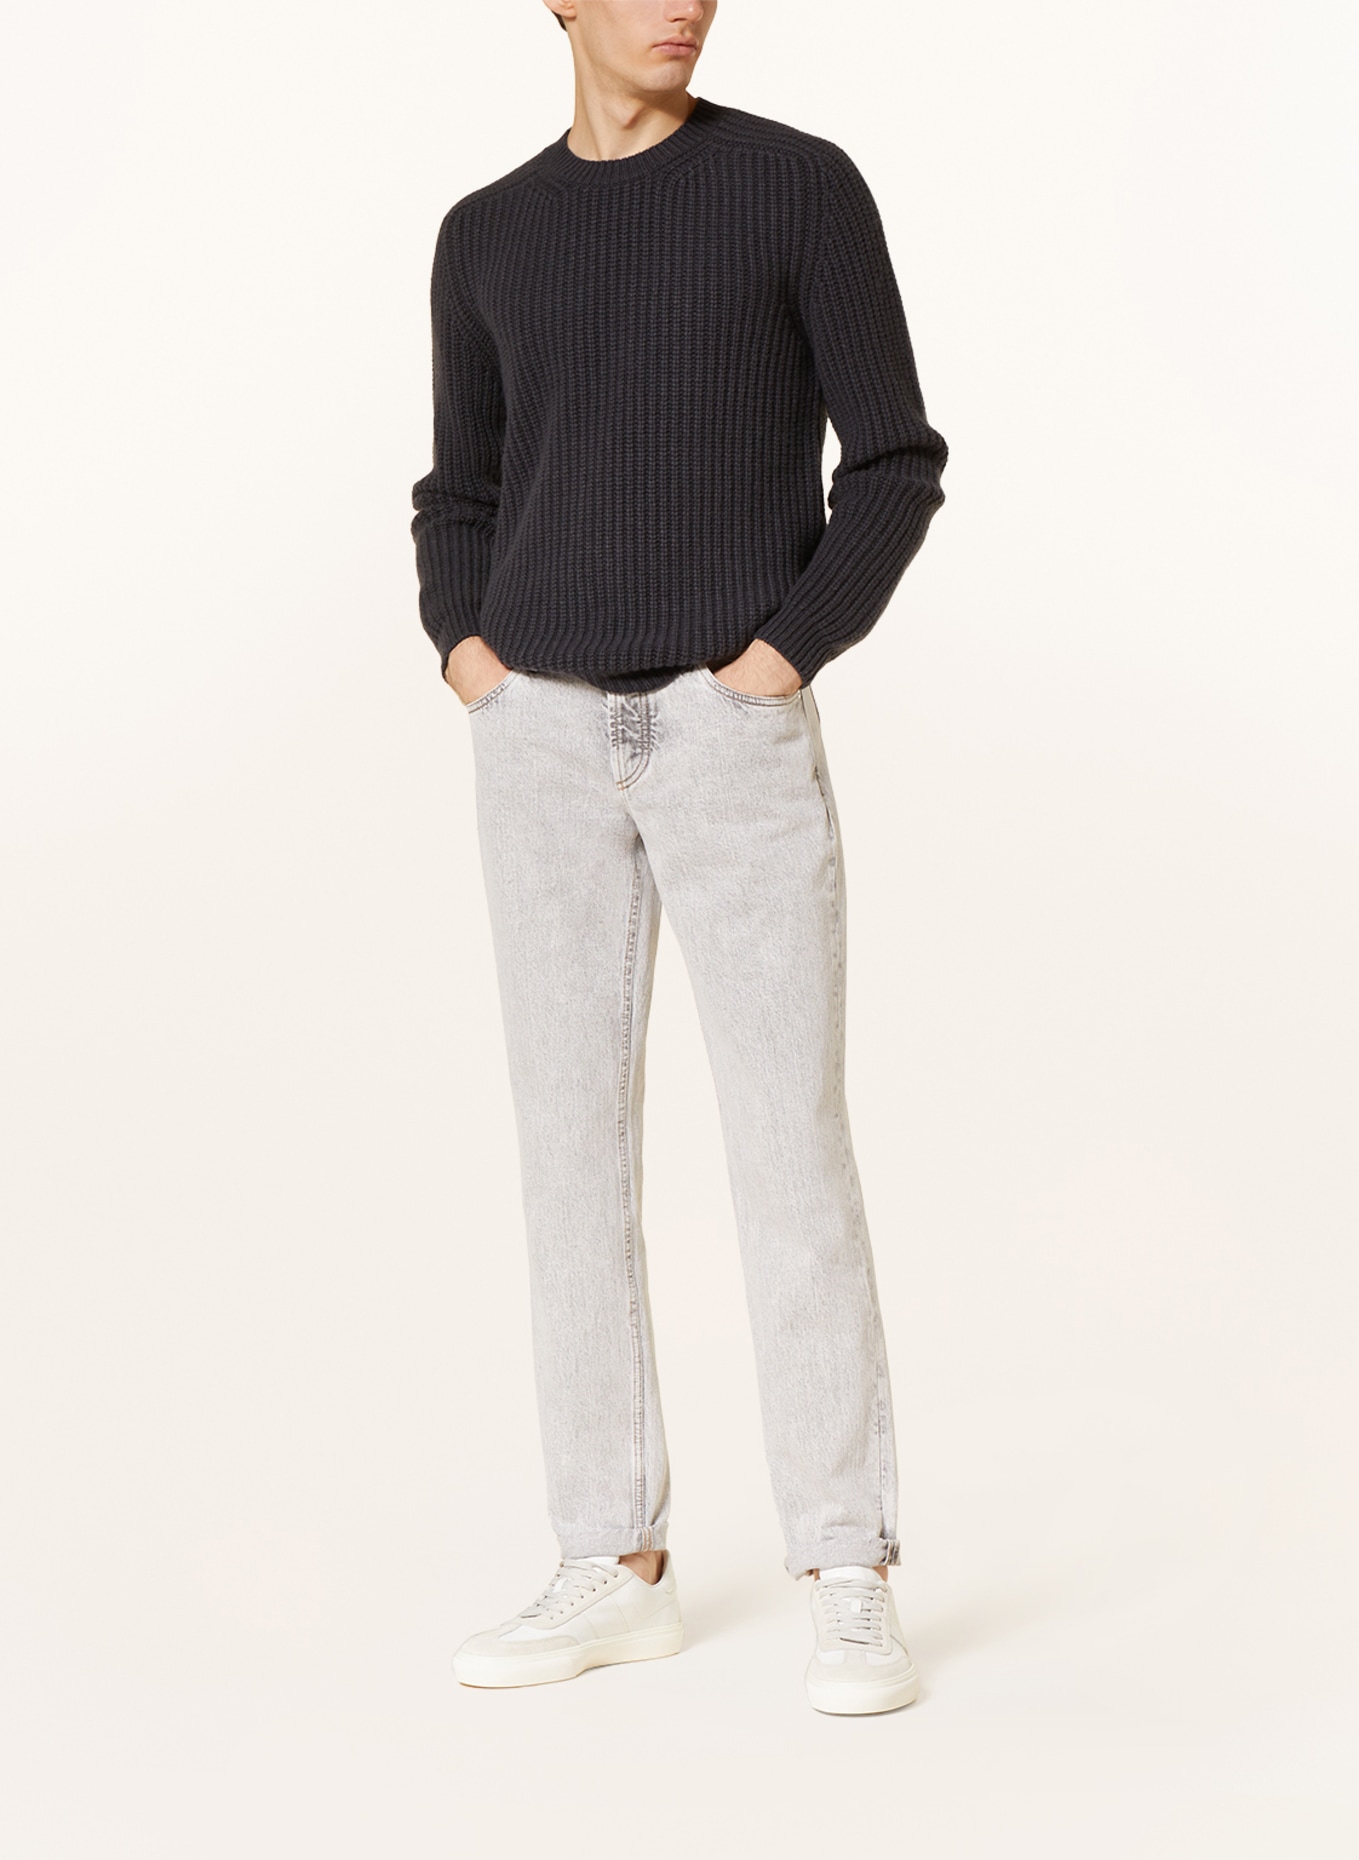 IRIS von ARNIM Cashmere sweater, Color: DARK GRAY (Image 2)